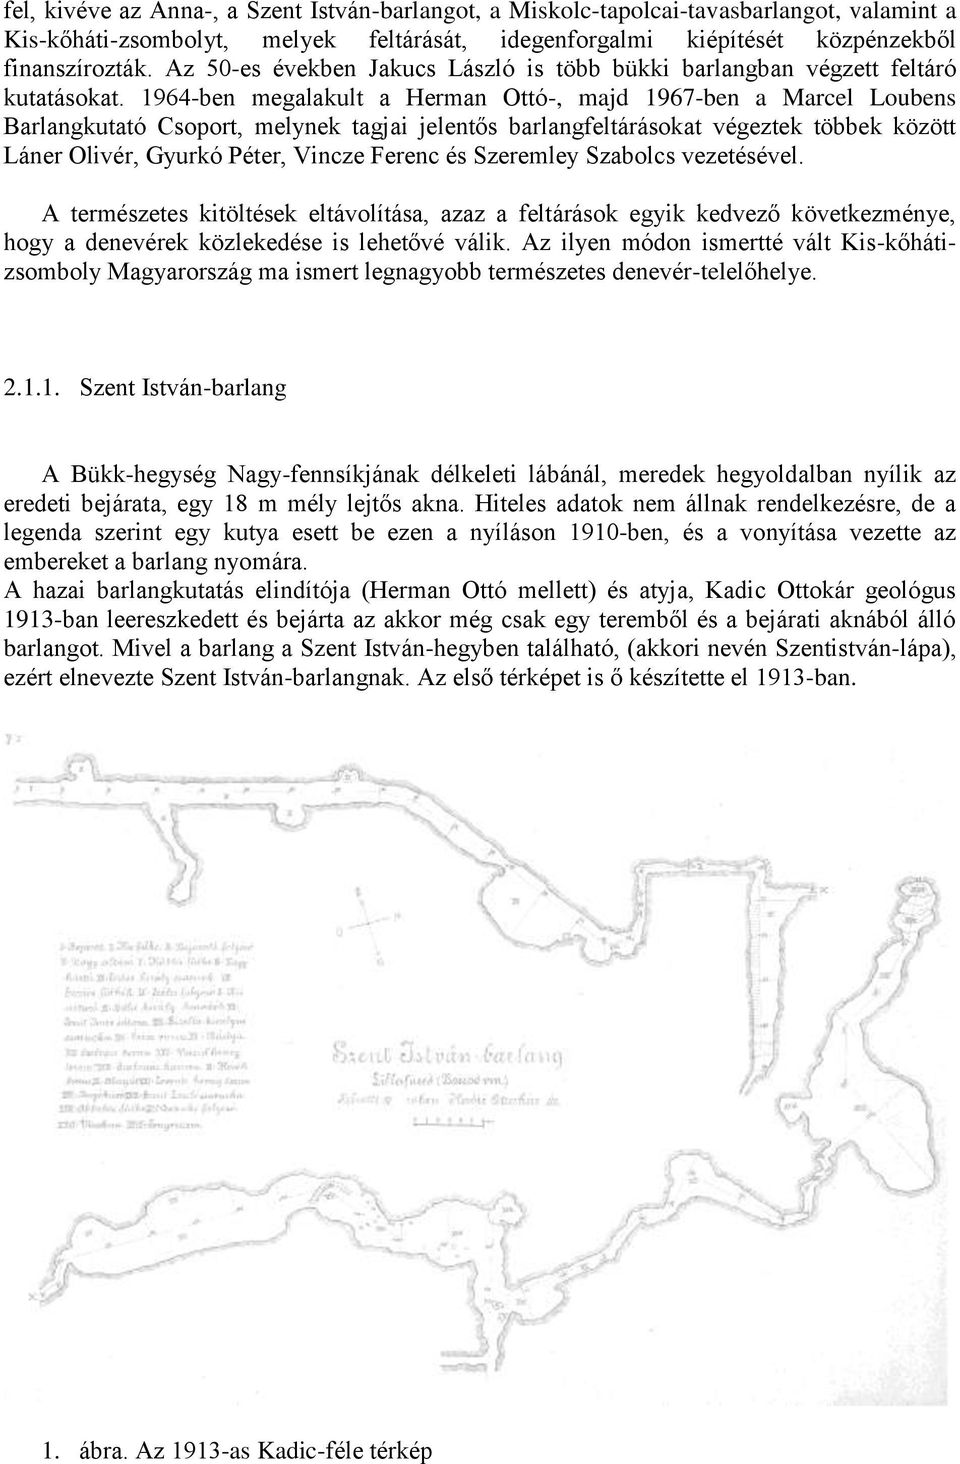 1964-ben megalakult a Herman Ottó-, majd 1967-ben a Marcel Loubens Barlangkutató Csoport, melynek tagjai jelentős barlangfeltárásokat végeztek többek között Láner Olivér, Gyurkó Péter, Vincze Ferenc